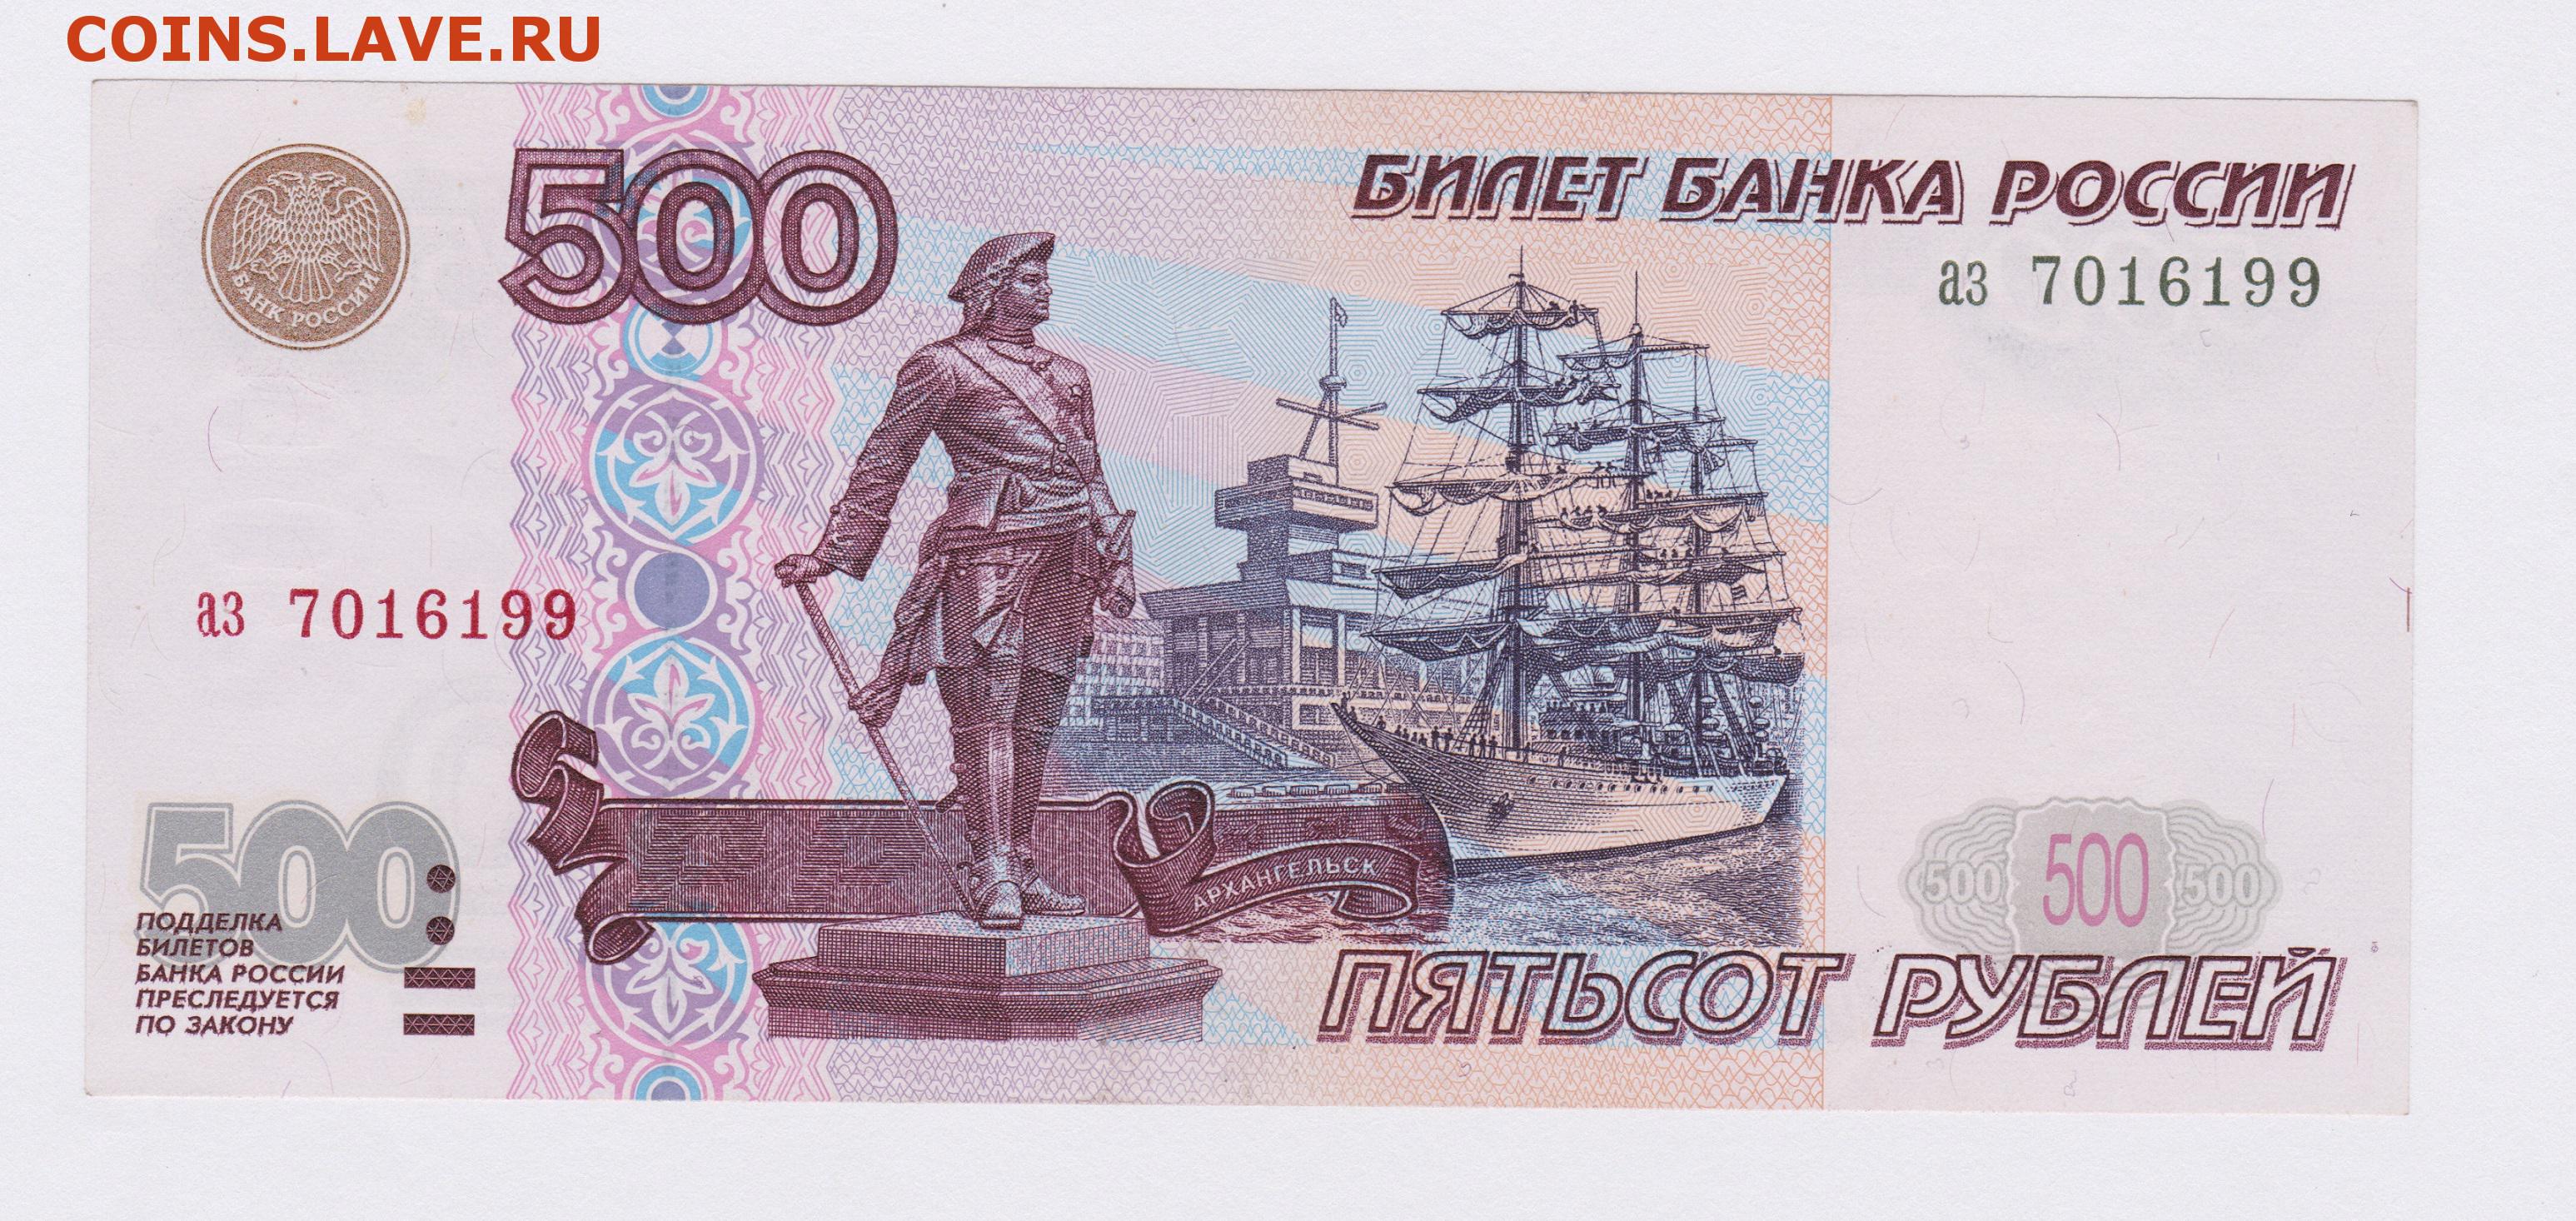 500 рублей хватит. Купюра 500 рублей. 500 Рублей. Банкнота 500 рублей. 500 Рублей изображение на купюре.